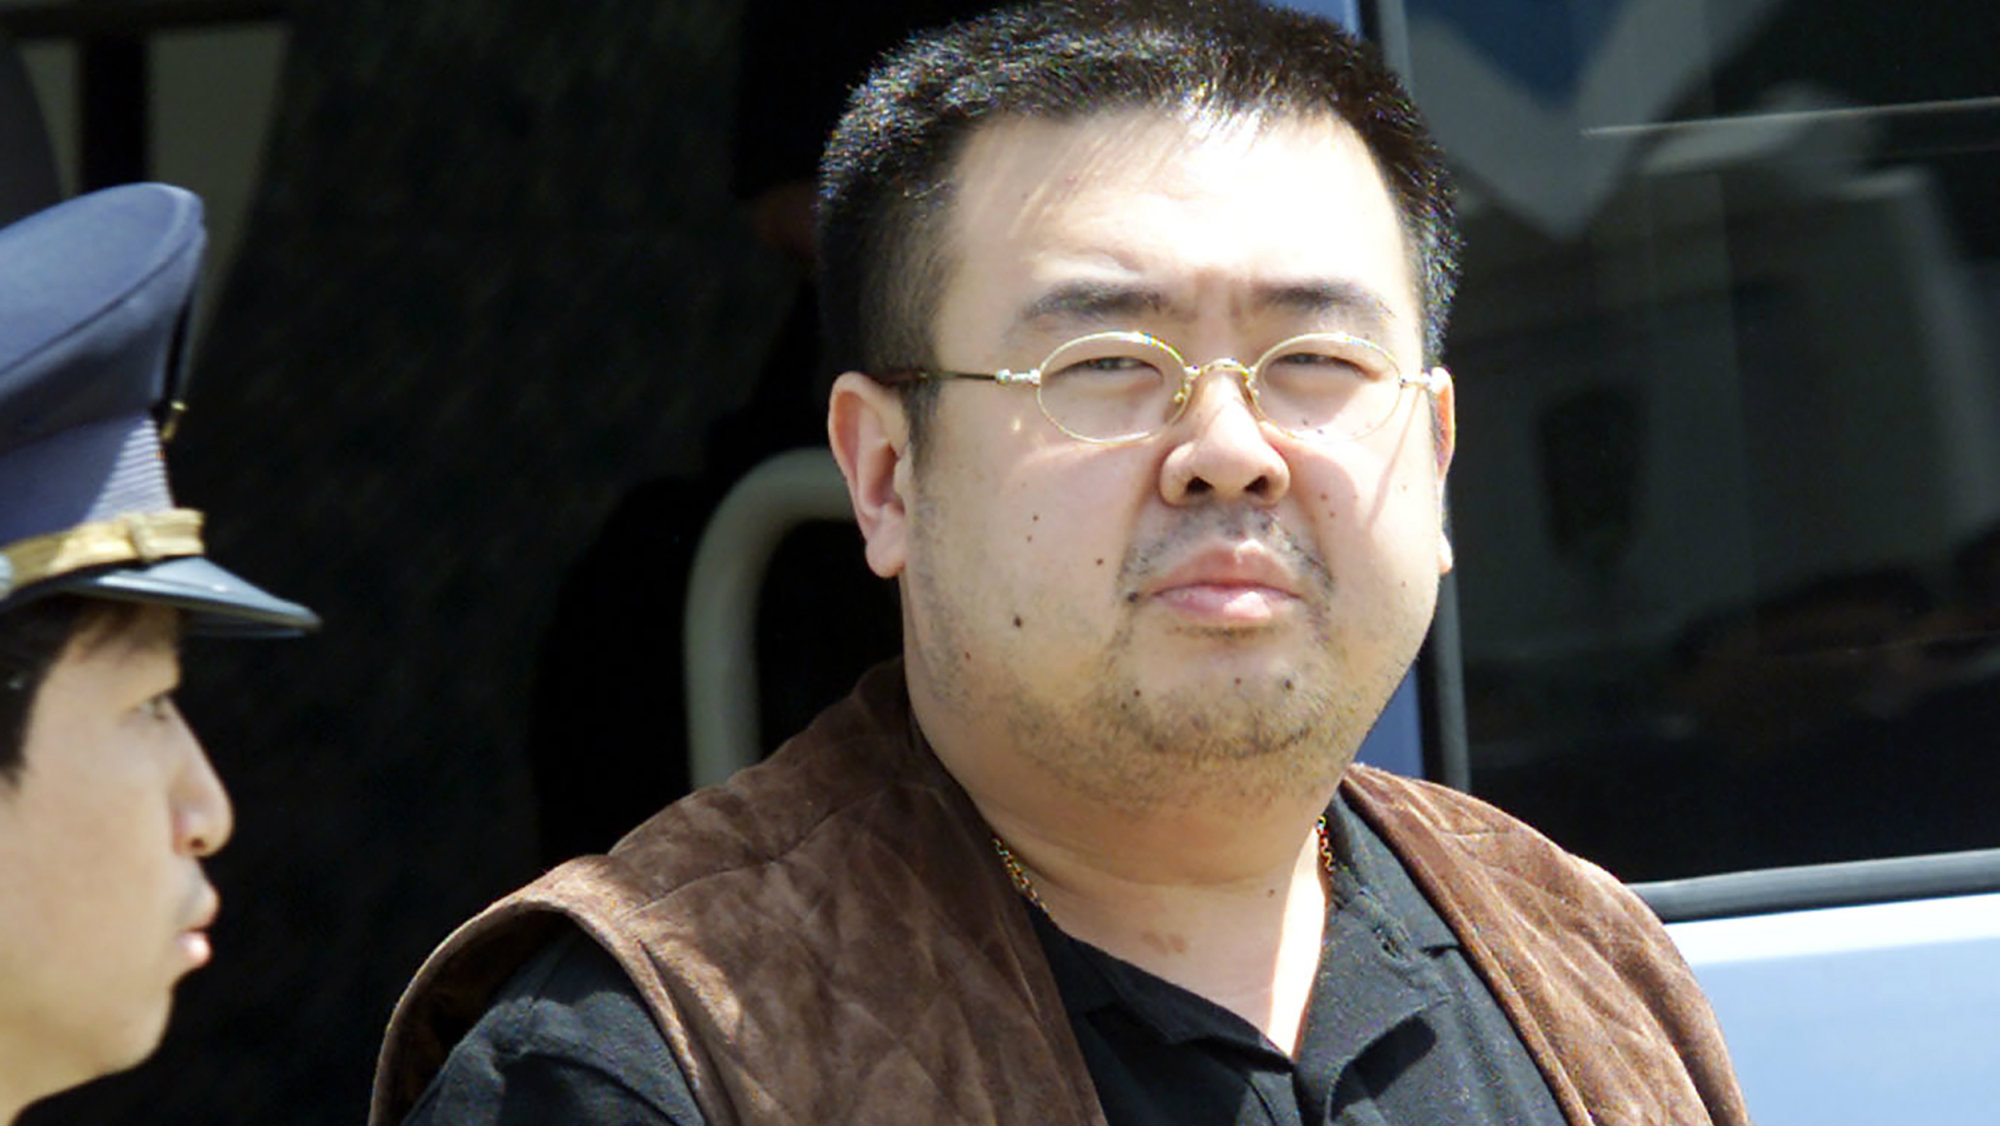 Убив Ким Чен Нама, киллеры "пошутили": шокирующее заявление участников дерзкого преступления 